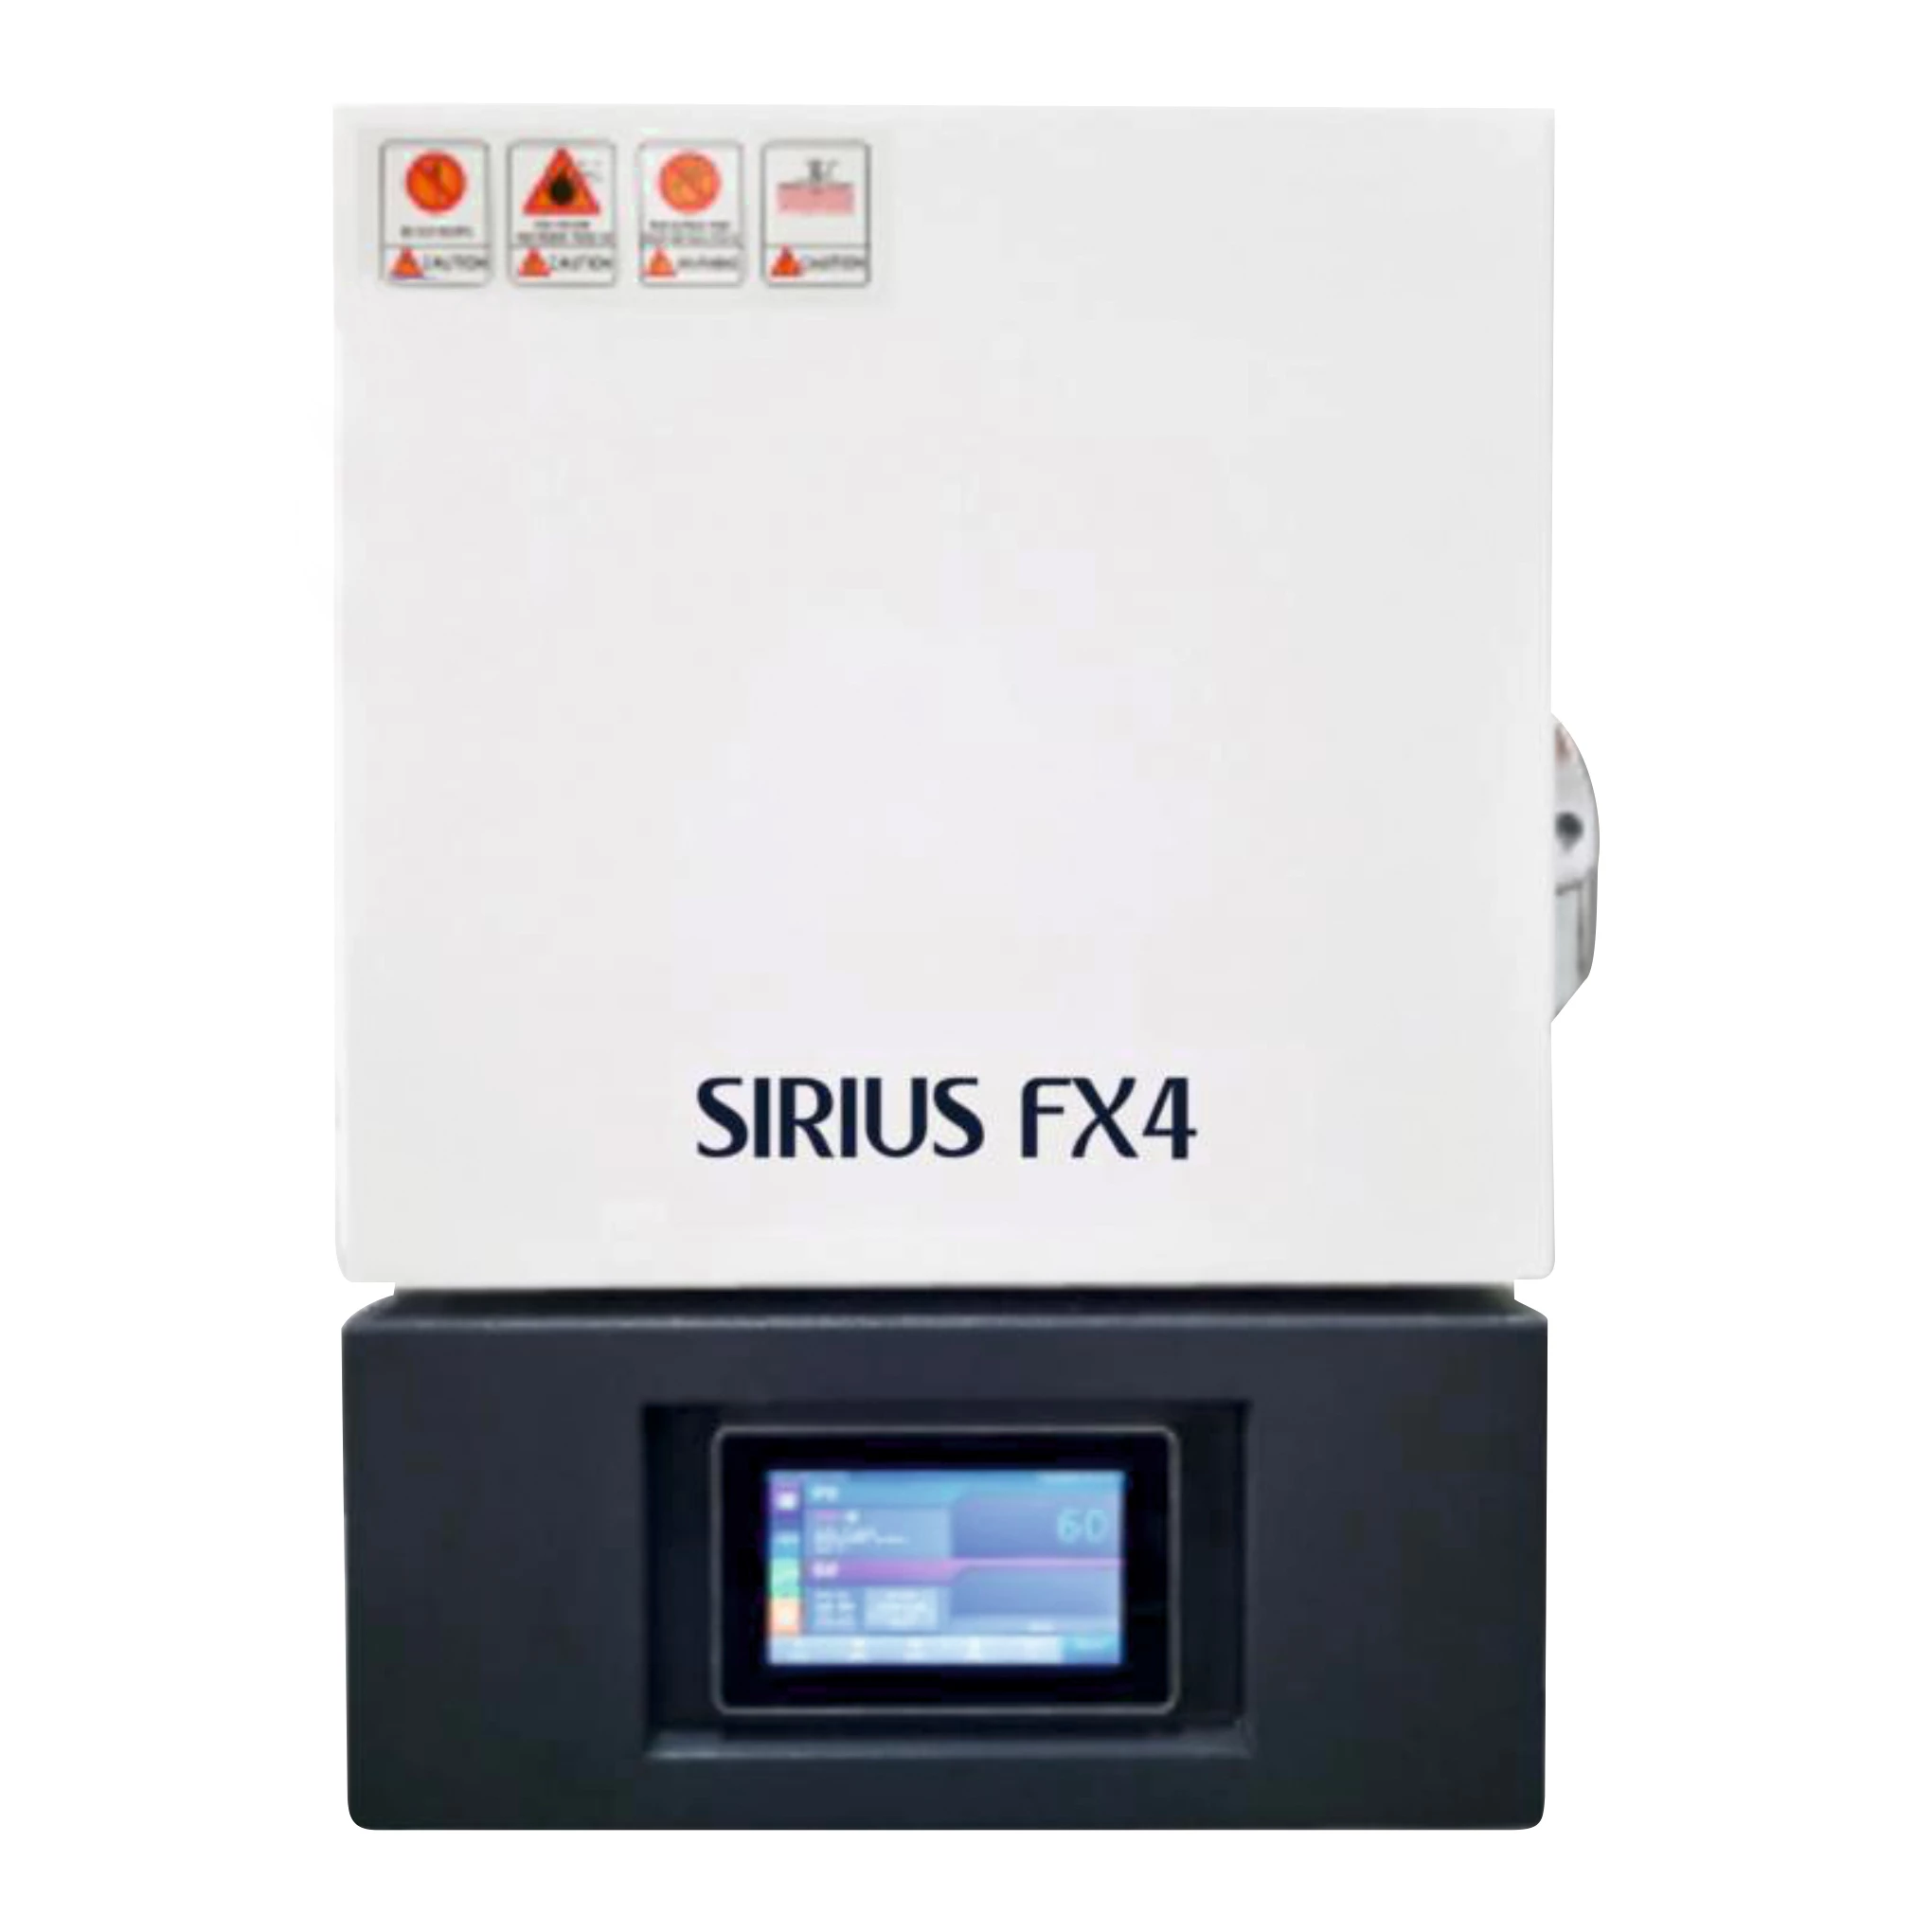 Высокотемпературная печь StarRoy SIRIUS FX4 зуботехническая